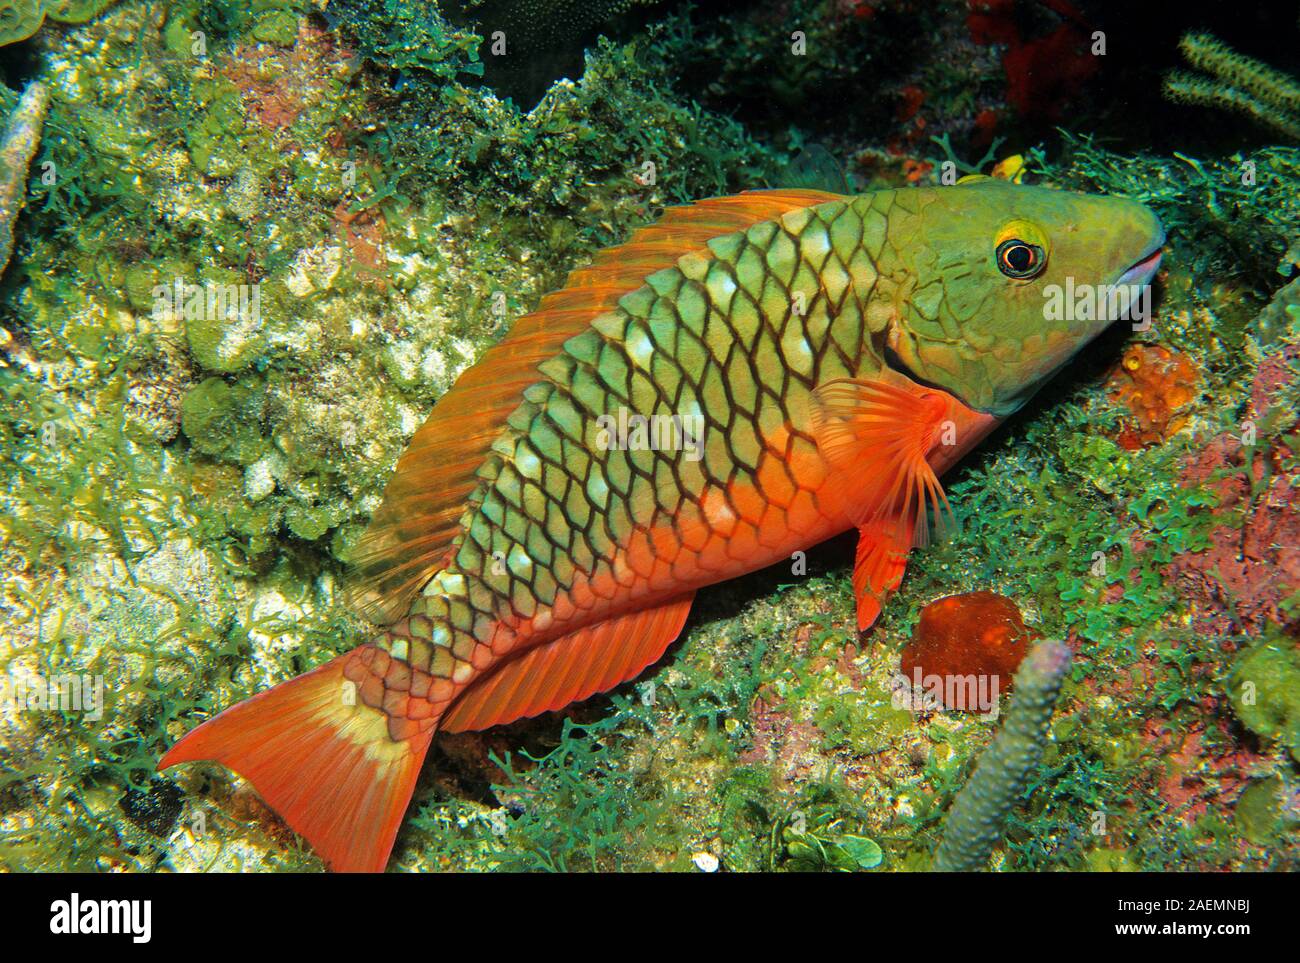 Redtail perroquet Sparisoma (chrysopterum) dans un récif de corail, Bonaire, Antilles néerlandaises, Caraïbes Banque D'Images